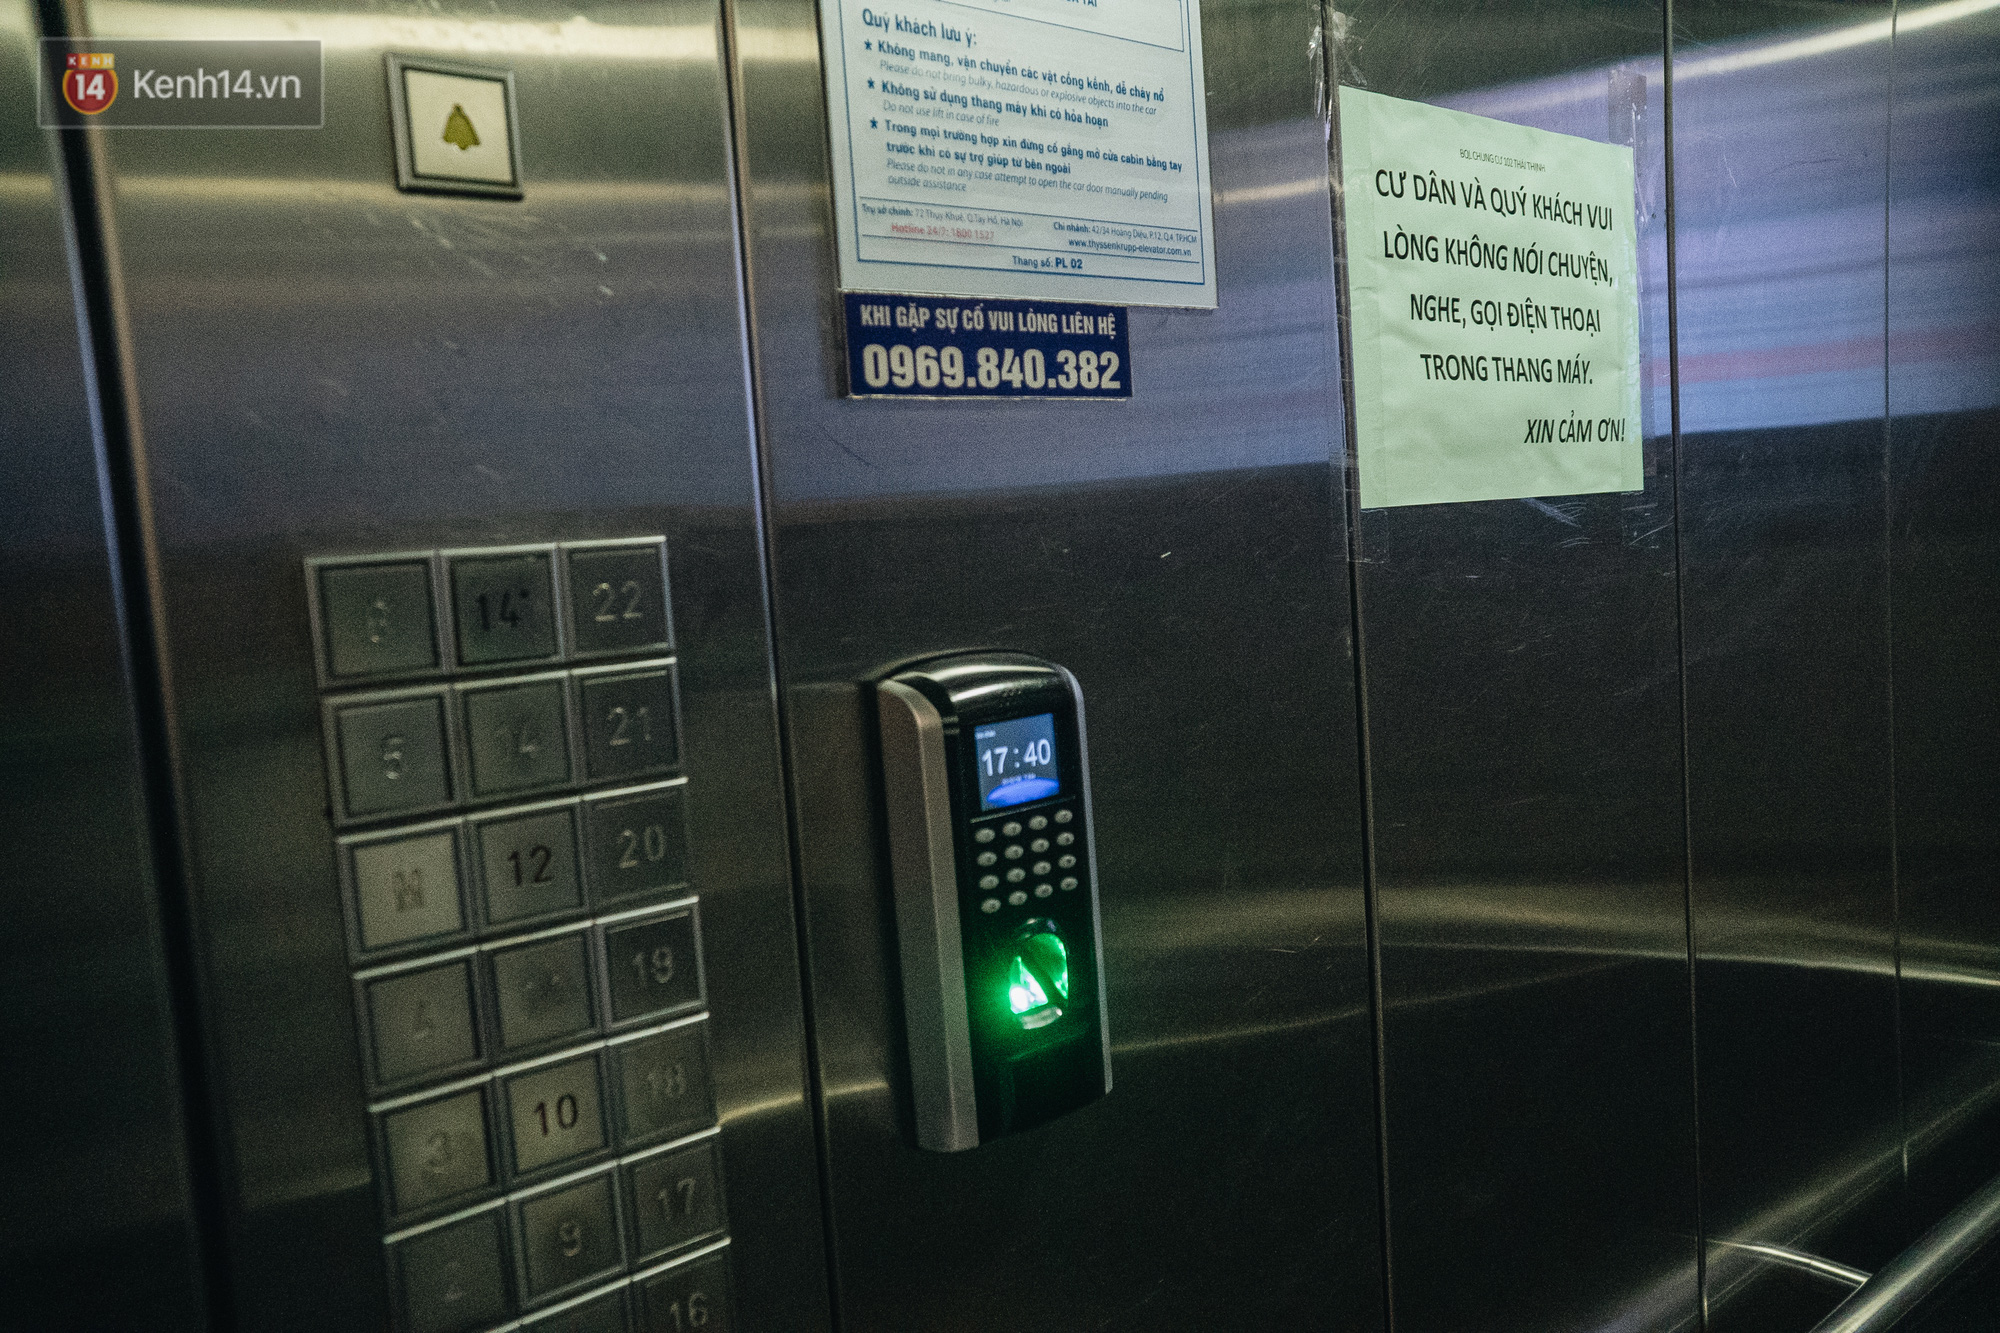 Bọc nylon nút bấm thang máy, yêu cầu cư dân không nói chuyện hay nghe điện thoại trong thang máy đề phòng virus Corona - Ảnh 6.